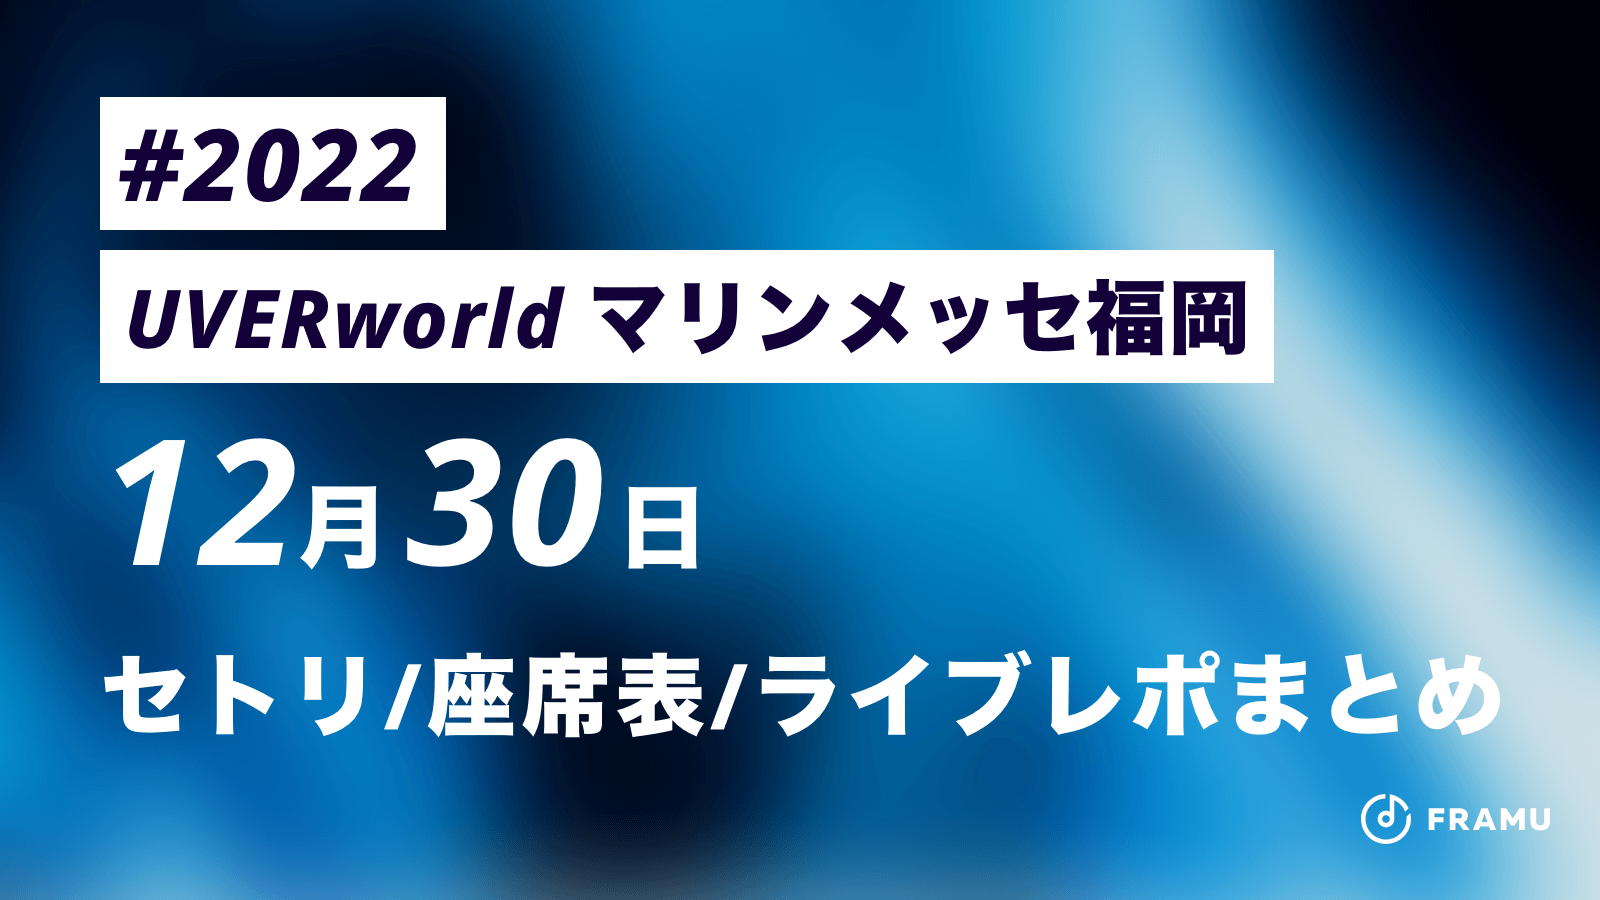 Uverworld ライブ22 マリンメッセ福岡 A館 12月30日 セトリ 座席表 ライブレポまとめ Framu Media